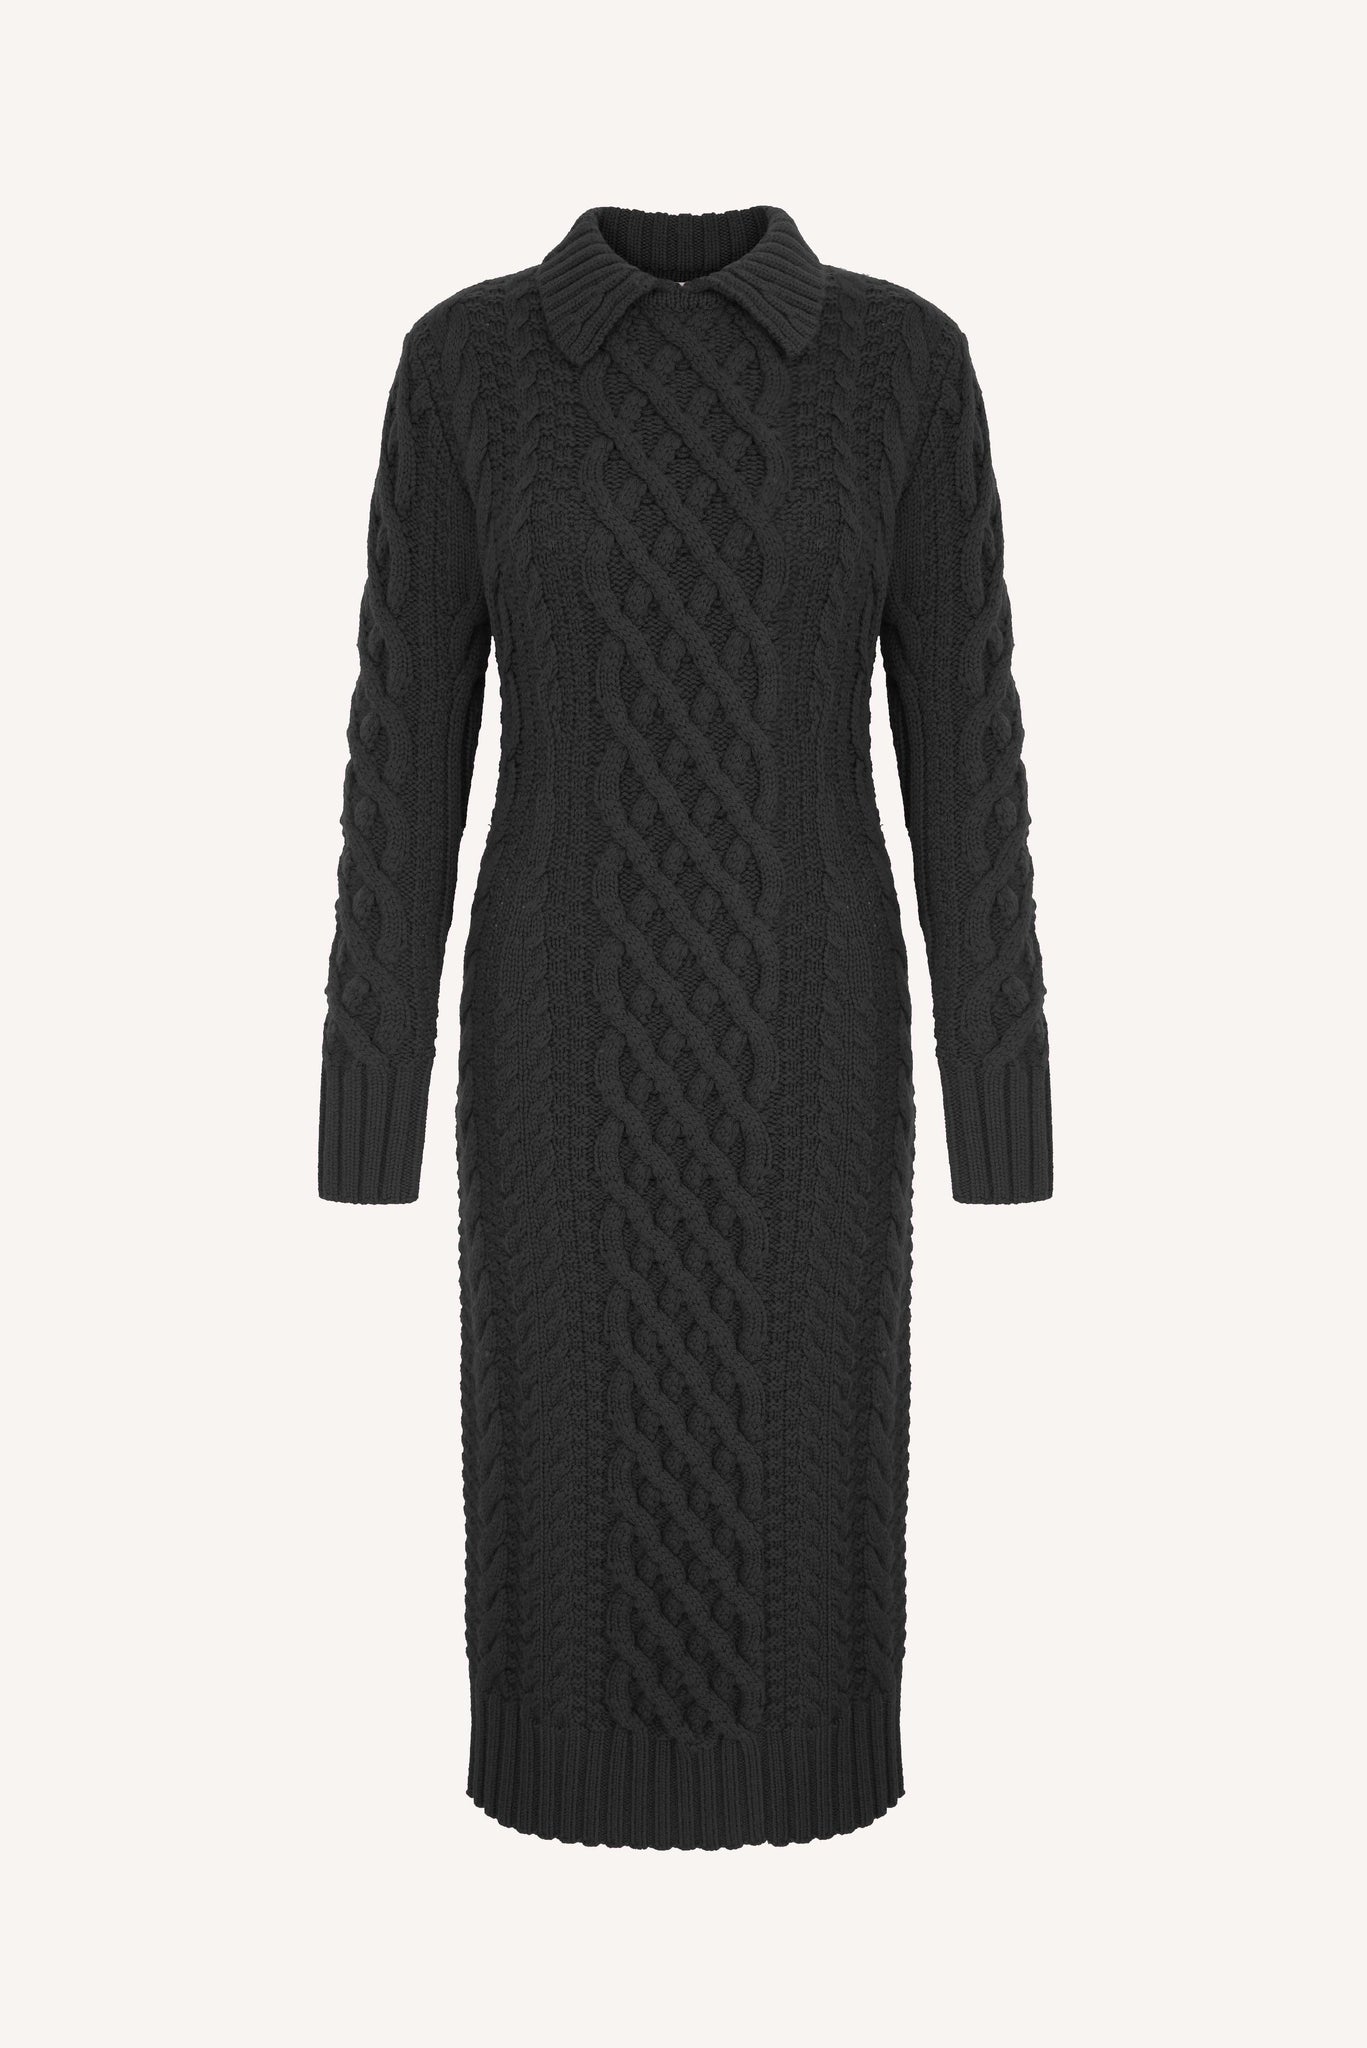 Zinny Black Cable Knit Dress | Emilia Wickstead